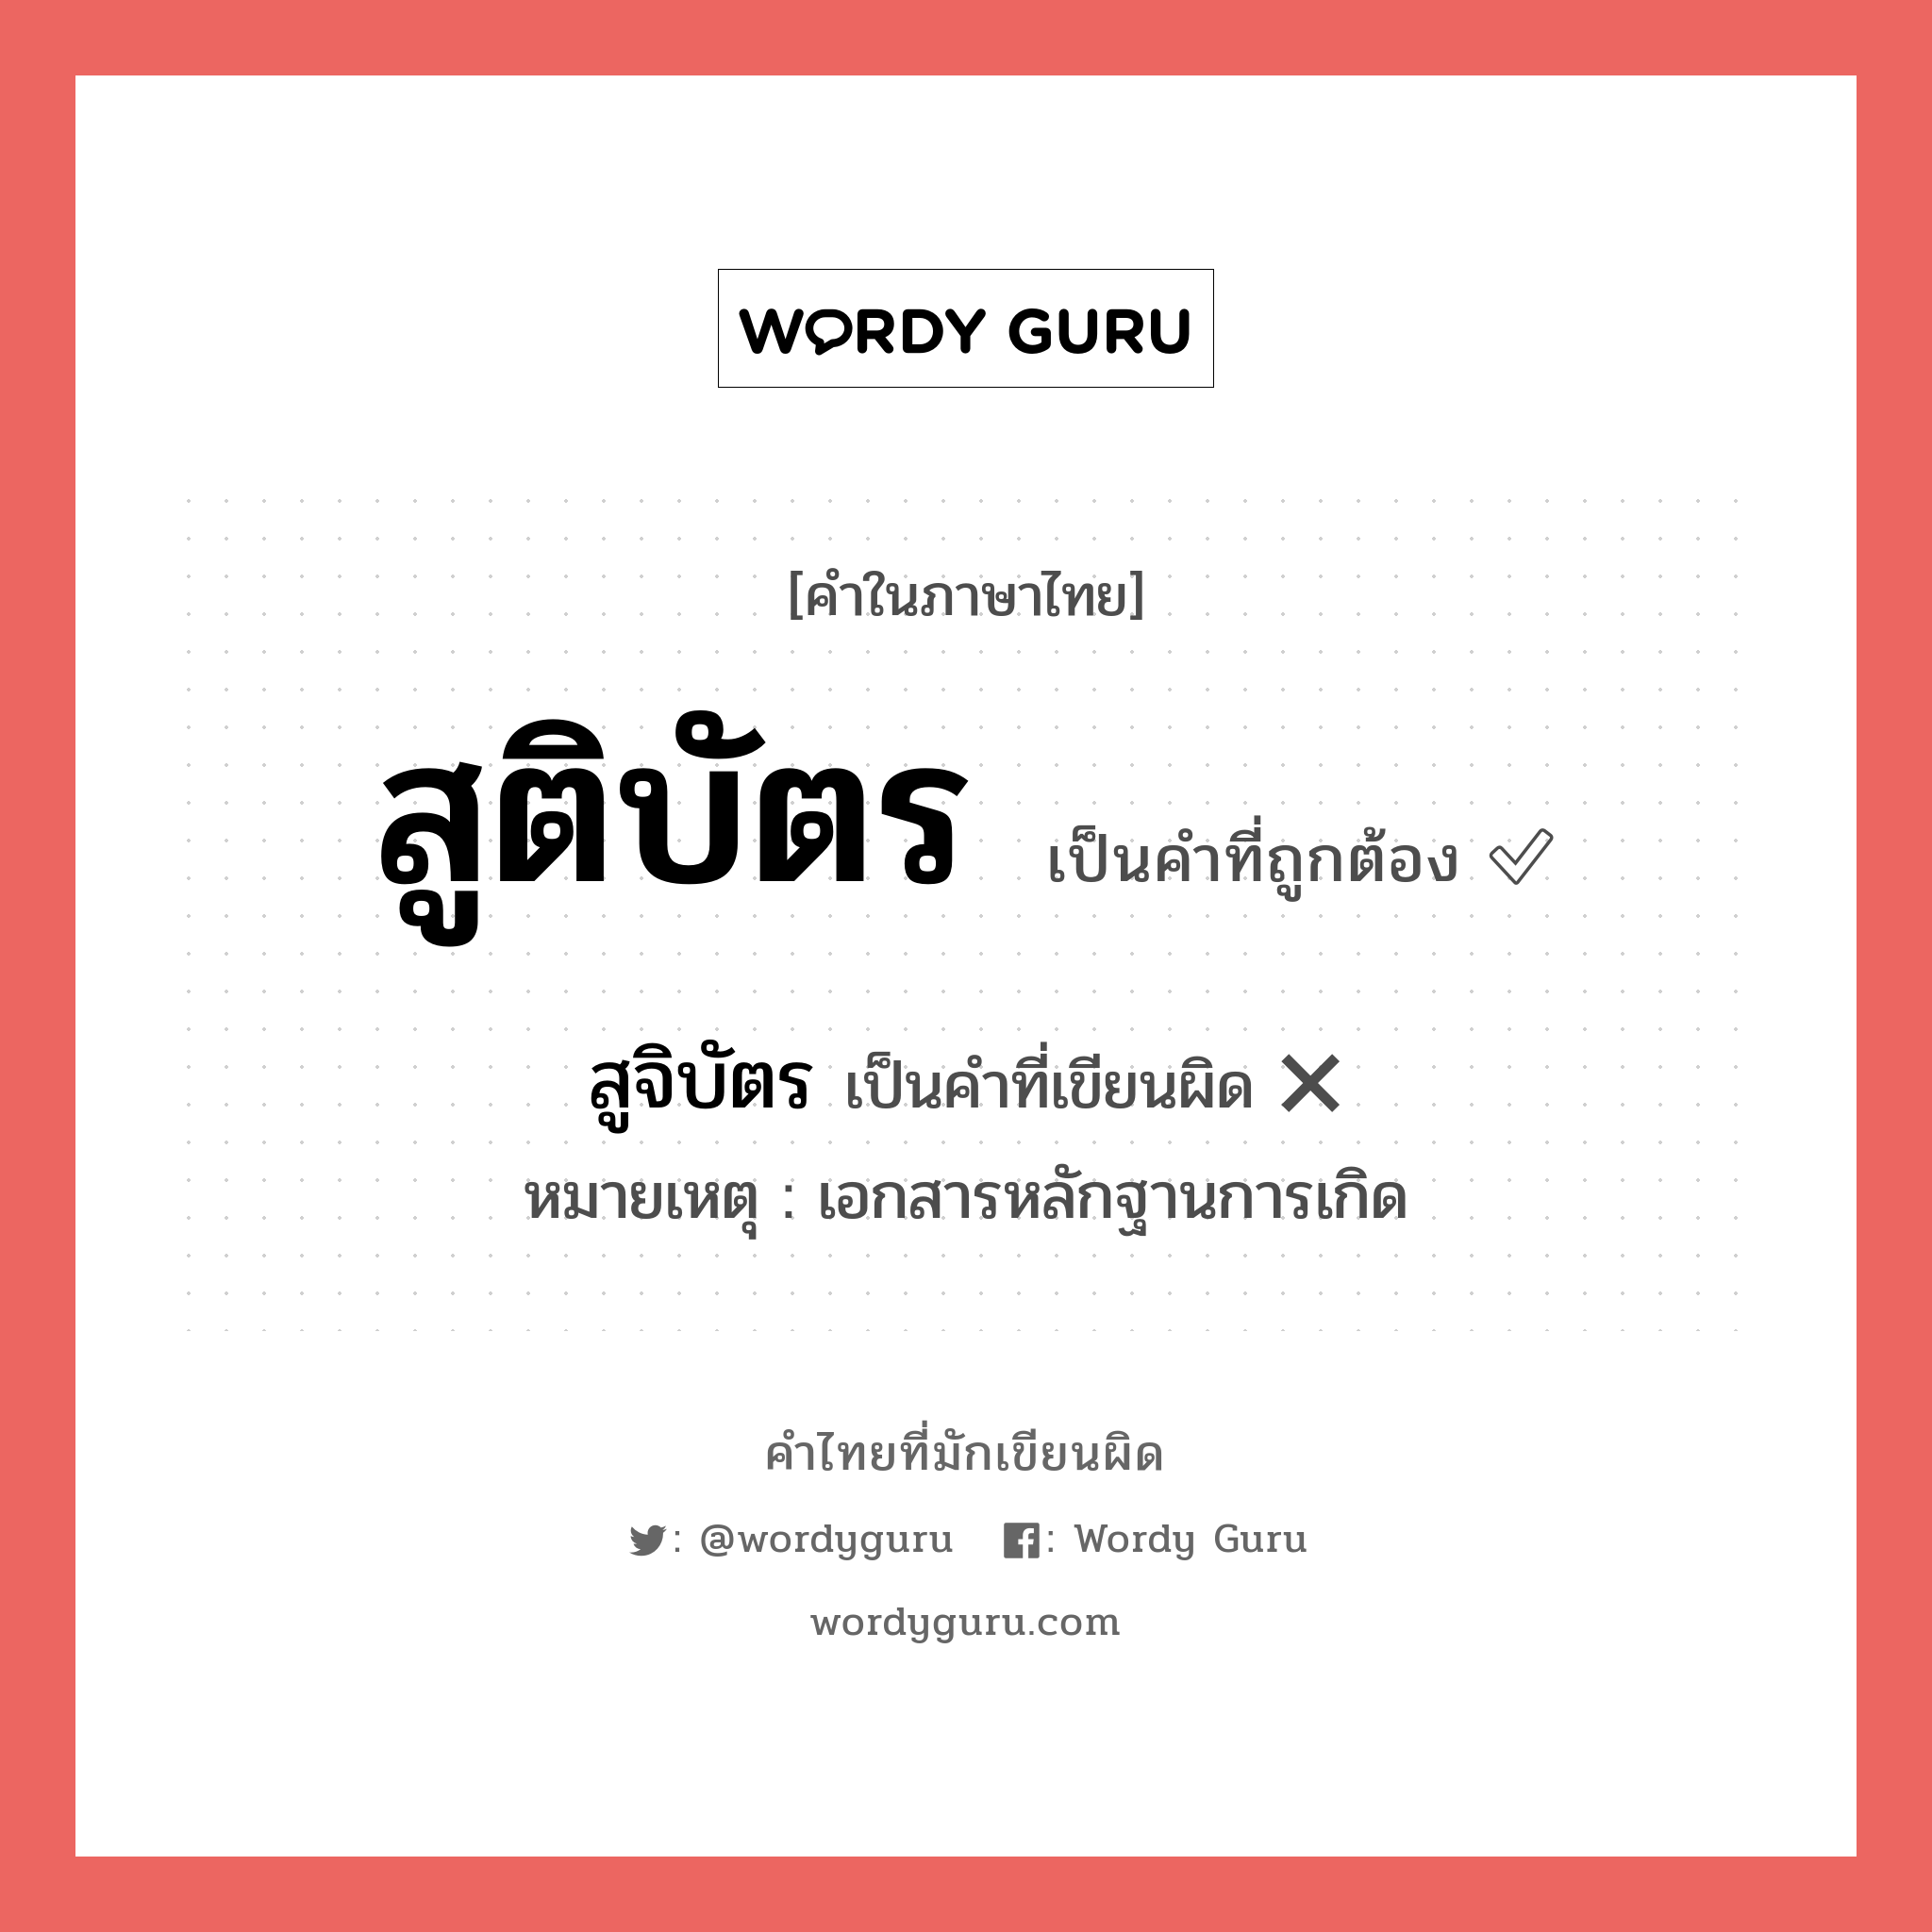 สูติบัตร หรือ สูจิบัตร คำไหนเขียนถูก?, คำในภาษาไทยที่มักเขียนผิด สูจิบัตร คำที่ผิด ❌ สูติบัตร หมายเหตุ เอกสารหลักฐานการเกิด